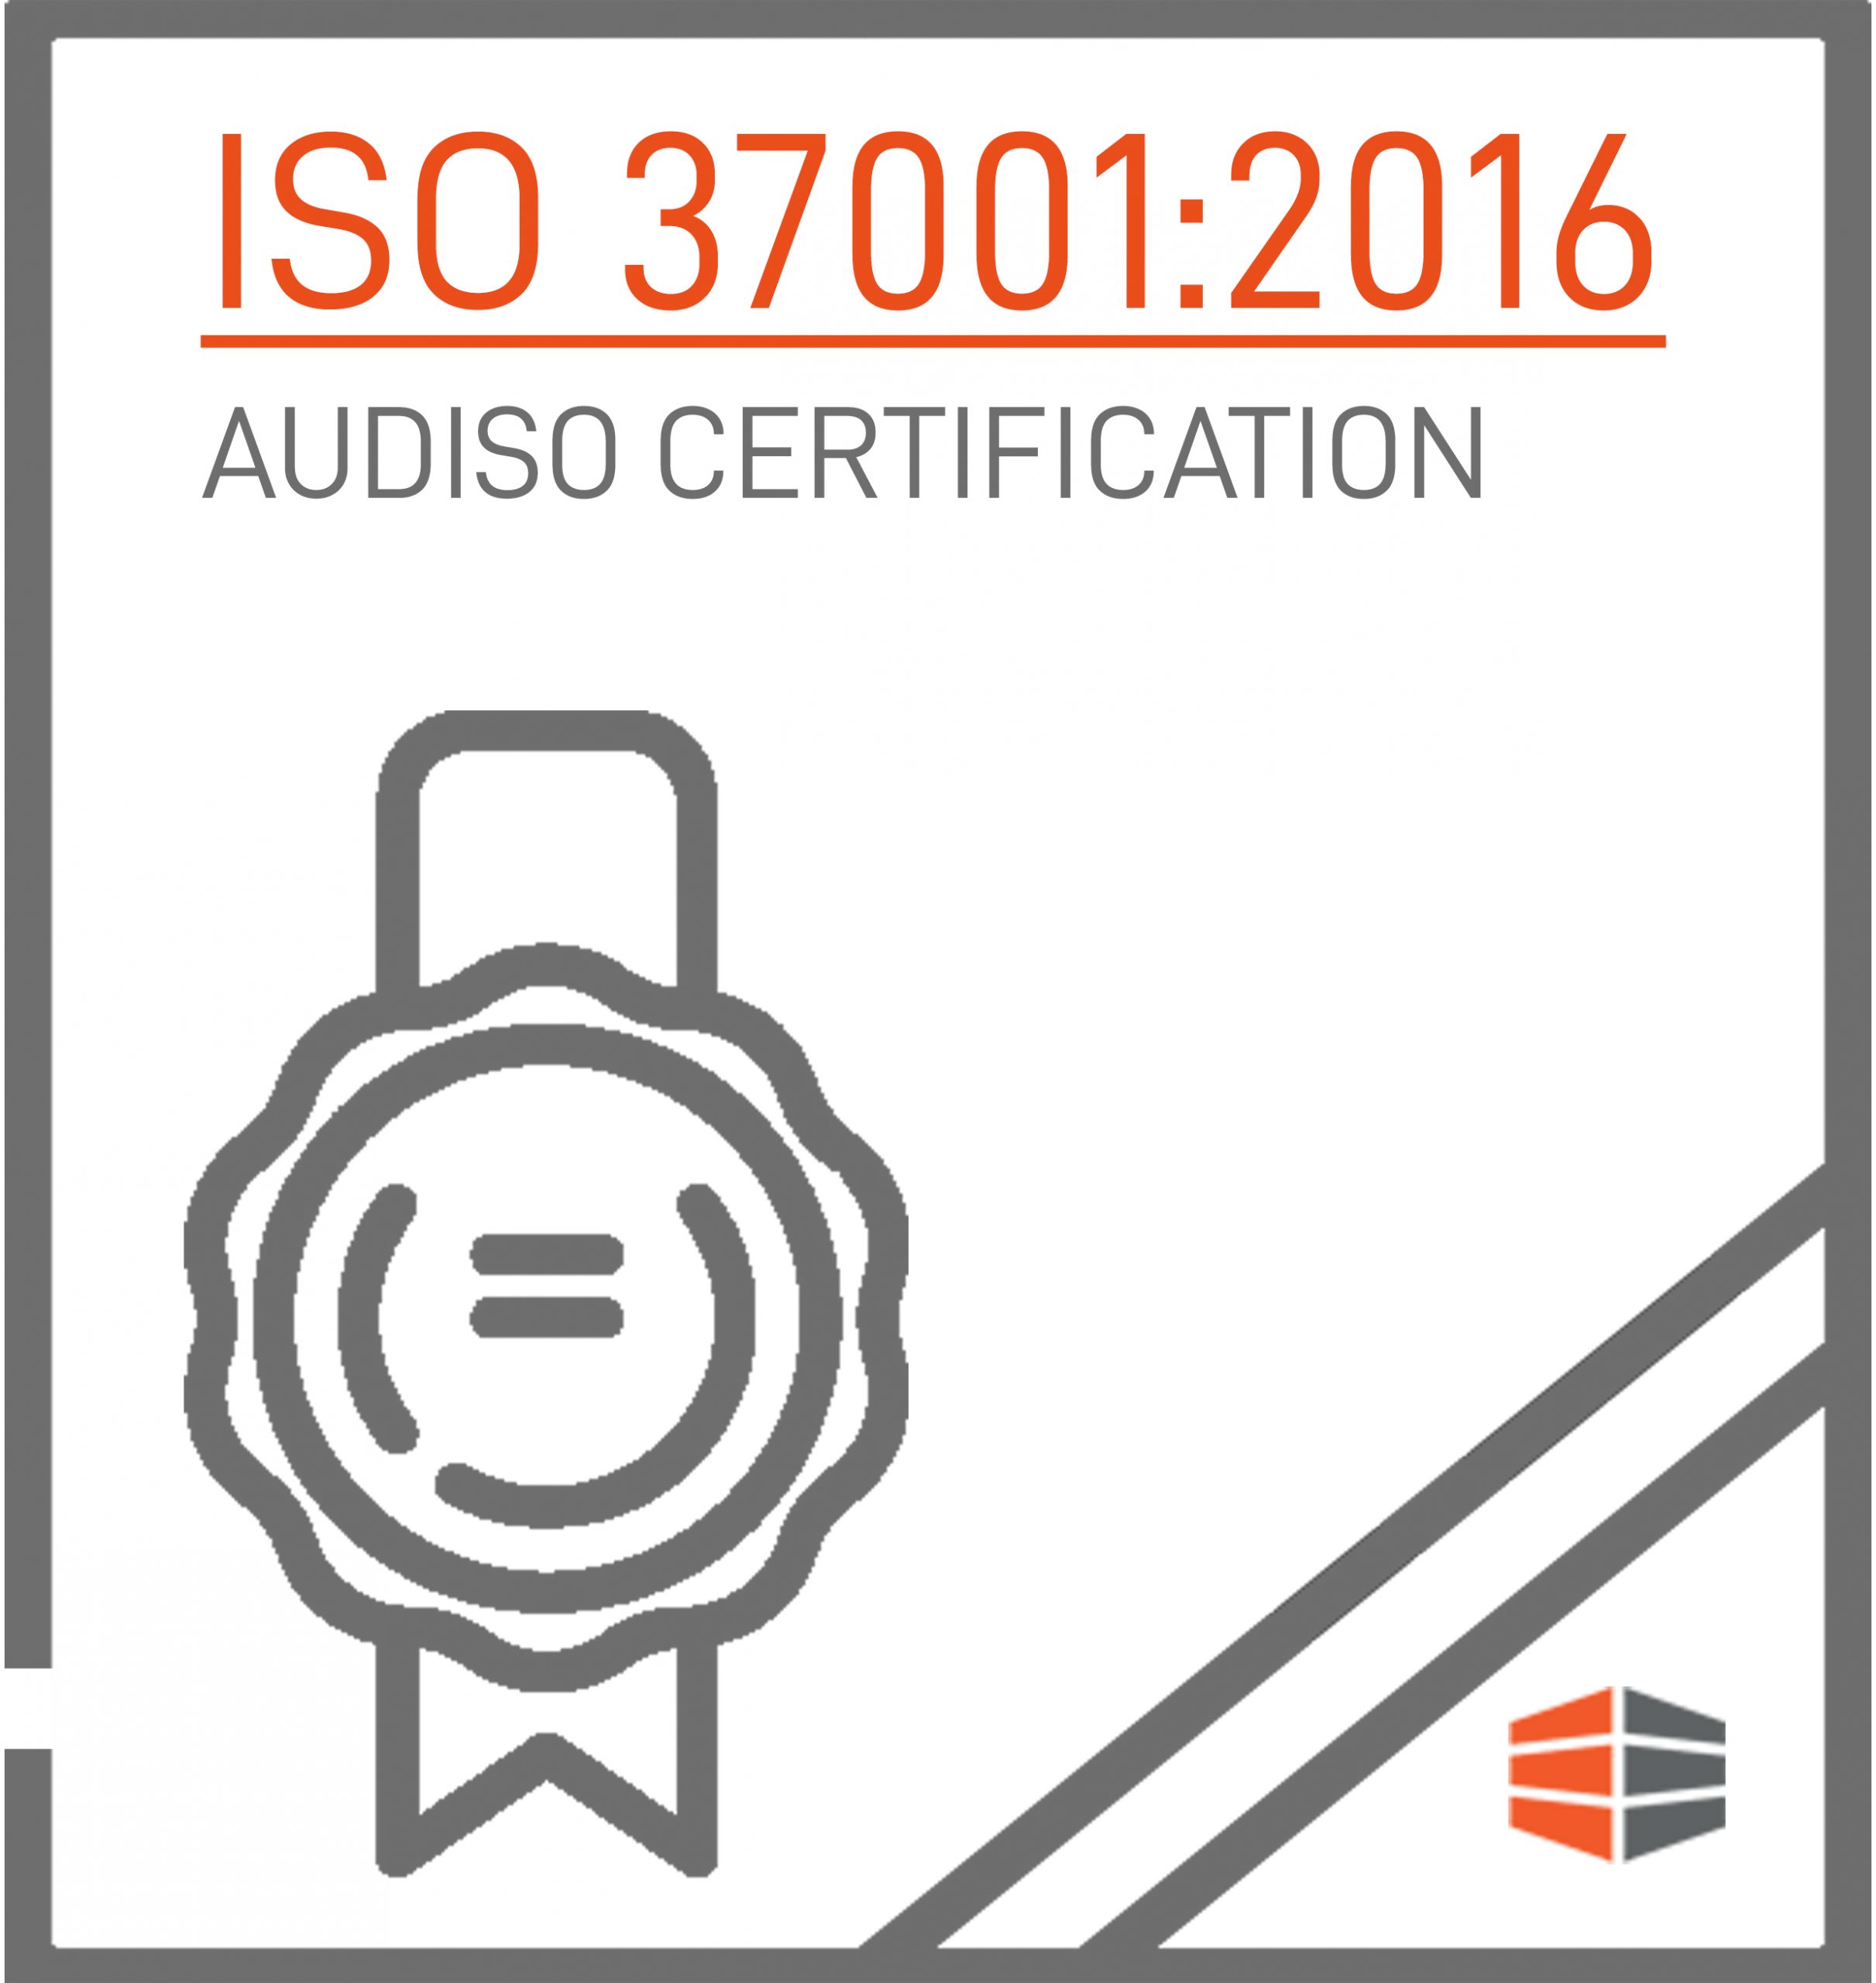 Certificazione ISO 37001:2016 Rilasciata da AUDISO CERTIFICATION